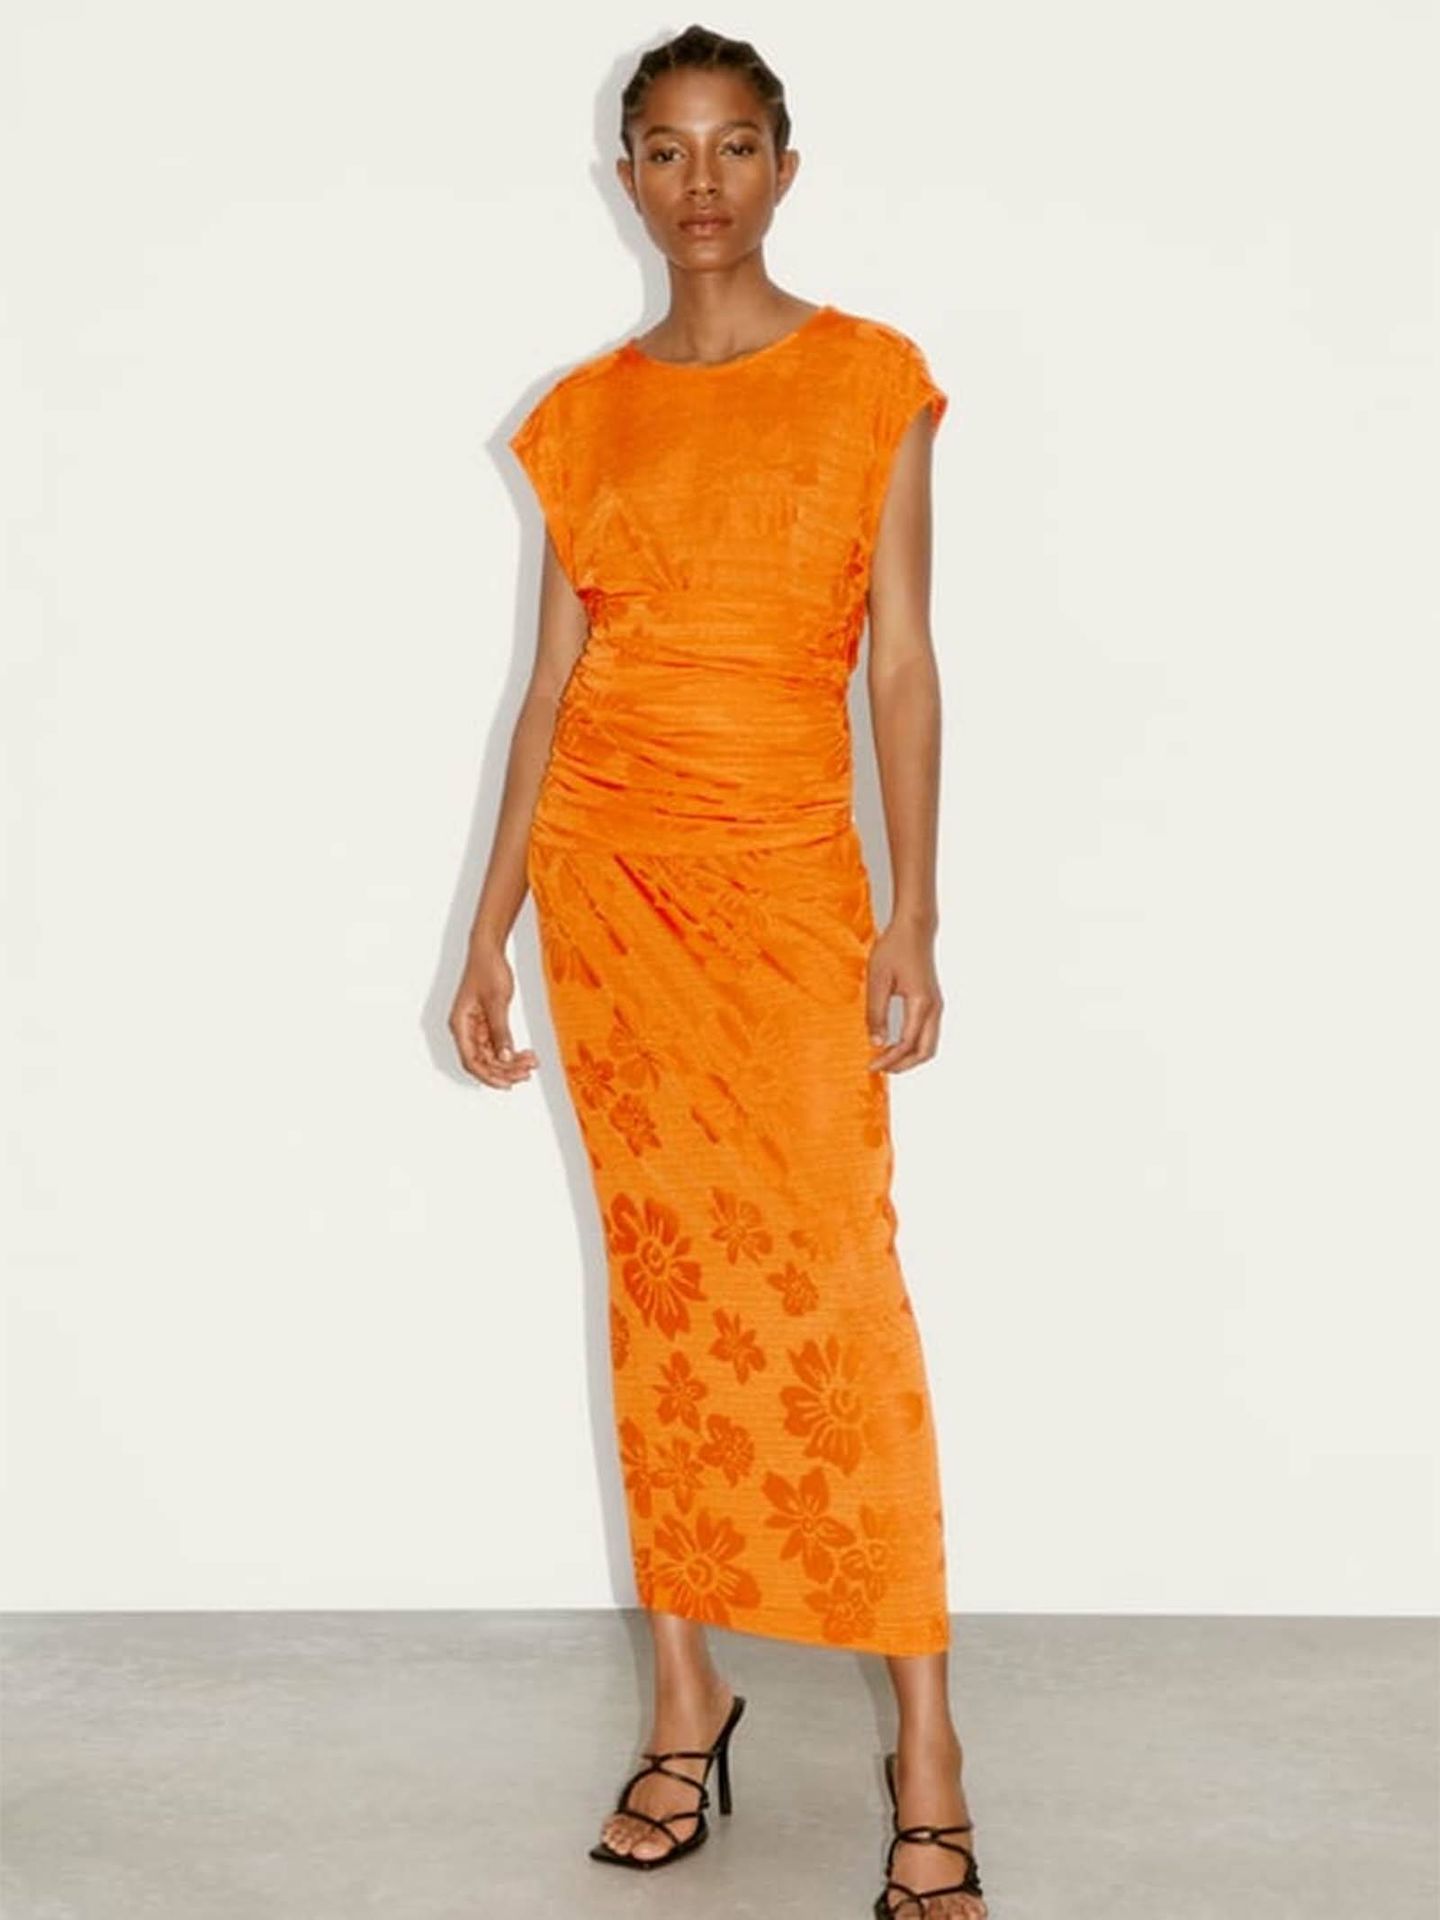 La reina Letizia nos hace comprar estos vestidos de color naranja. (Zara/Cortesía)